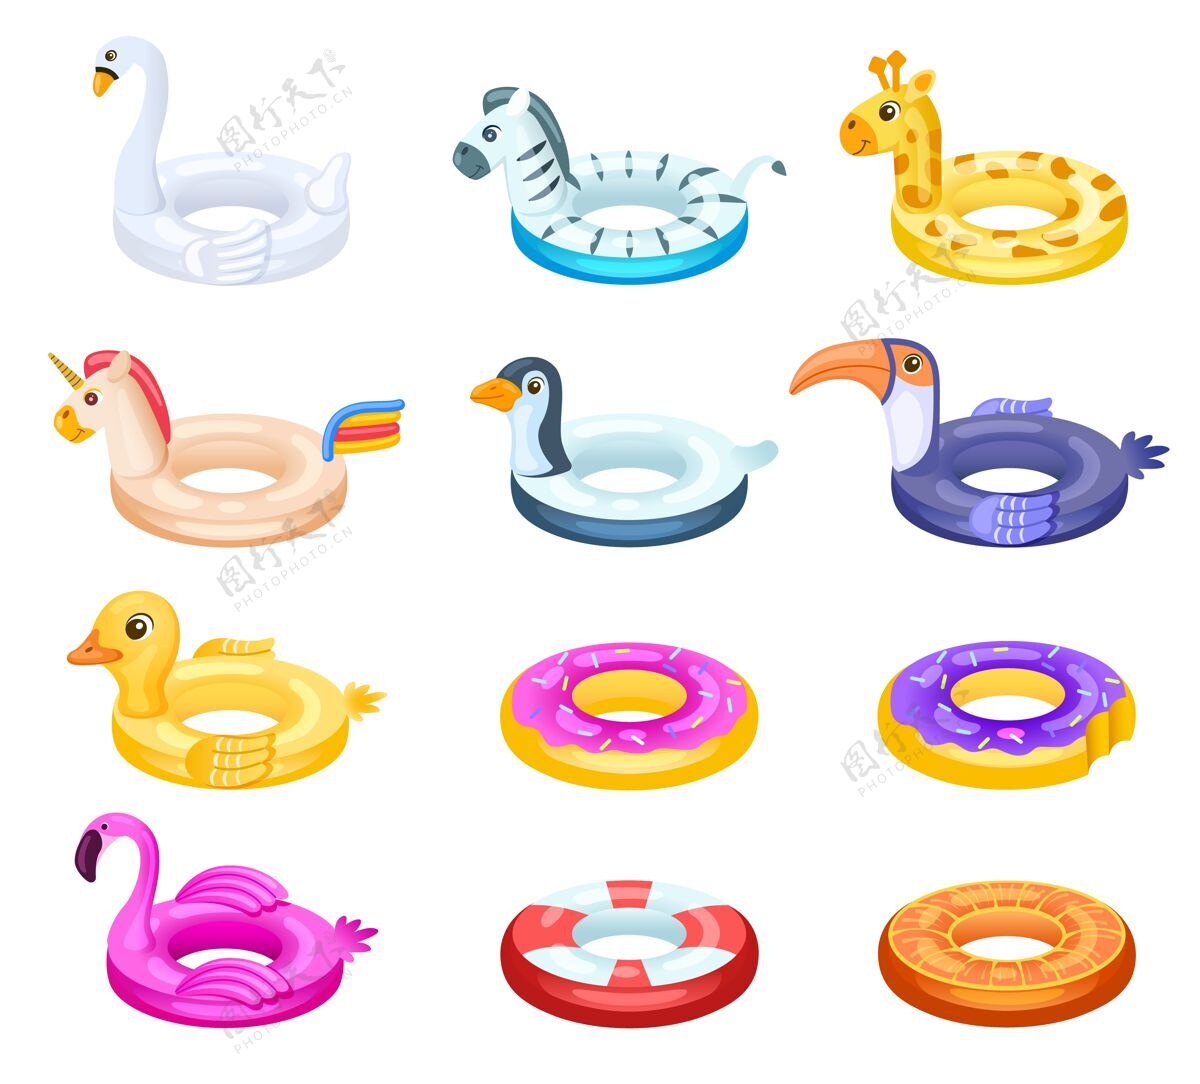 橡胶橡胶圈游泳圈 充气救生圈游泳鸭子卡通